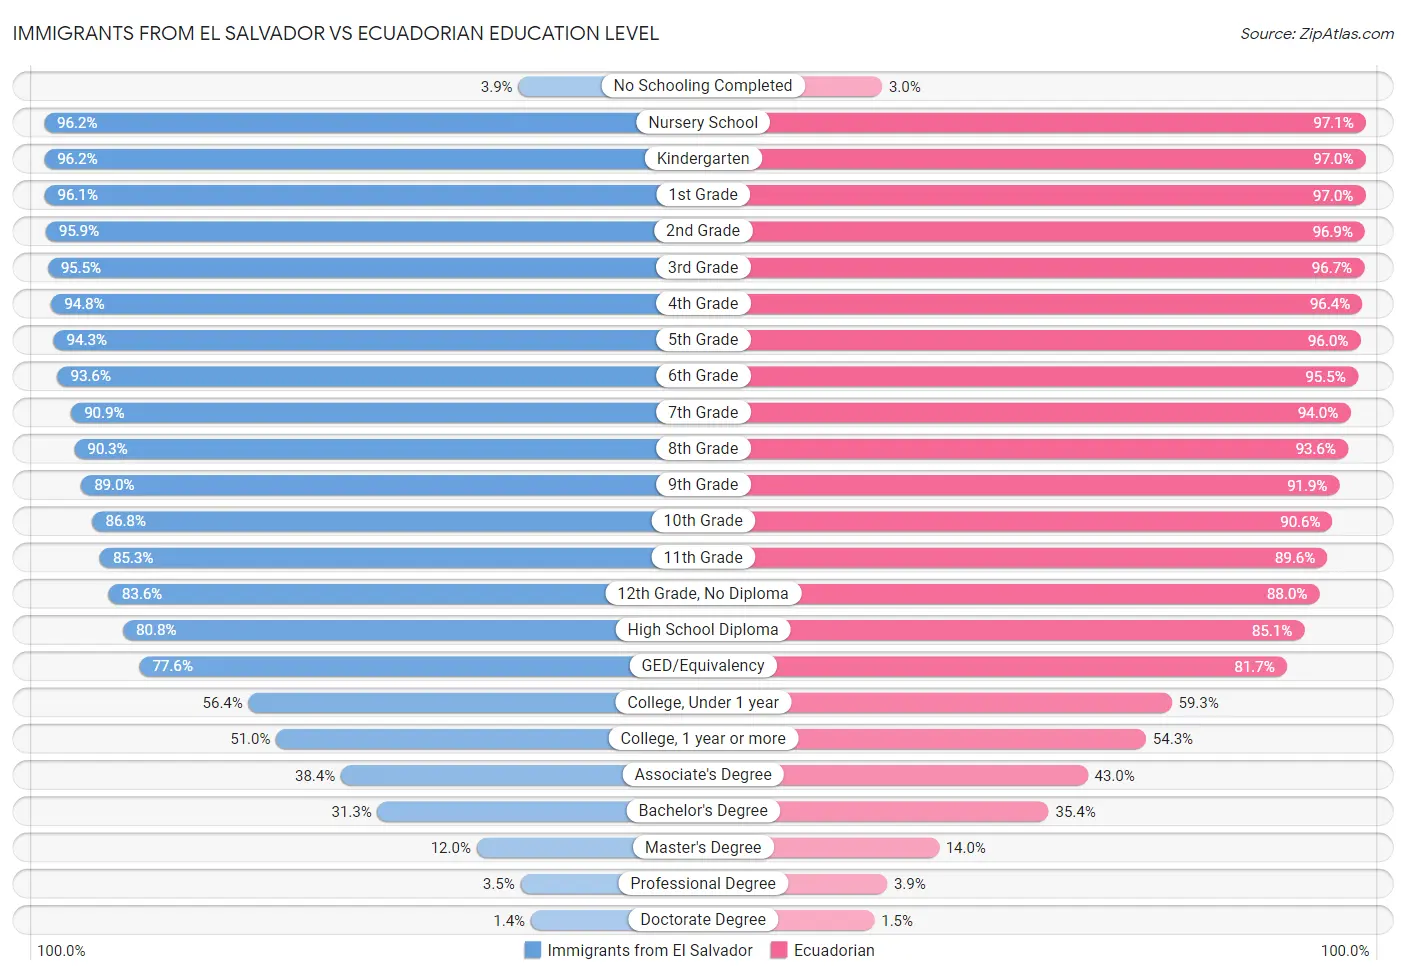 Immigrants from El Salvador vs Ecuadorian Education Level